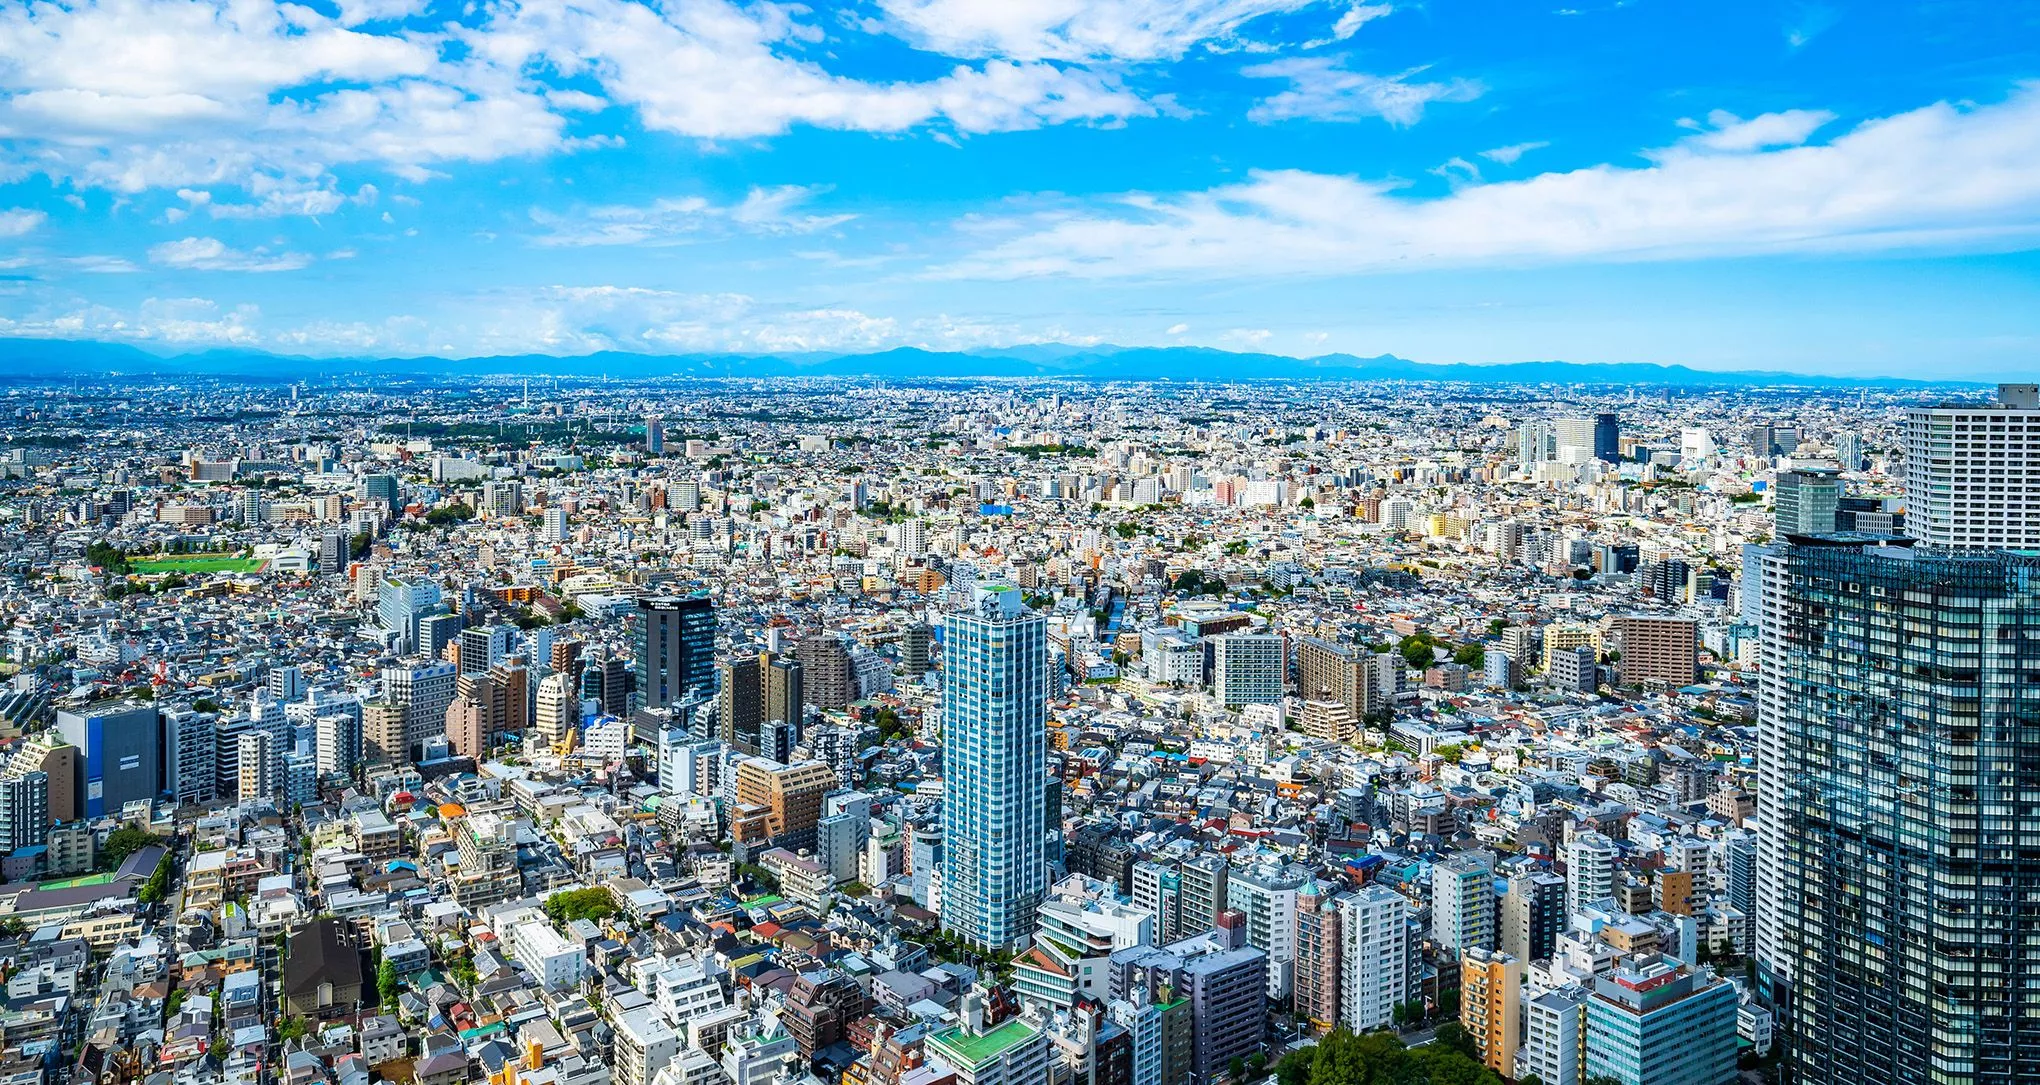 Von der Plattform des Tokyo Sky Tower erahnen Besucher die riesigen Ausmaße der japanischen Metropole: Etwa 38,5 Millionen Menschen leben in der Region